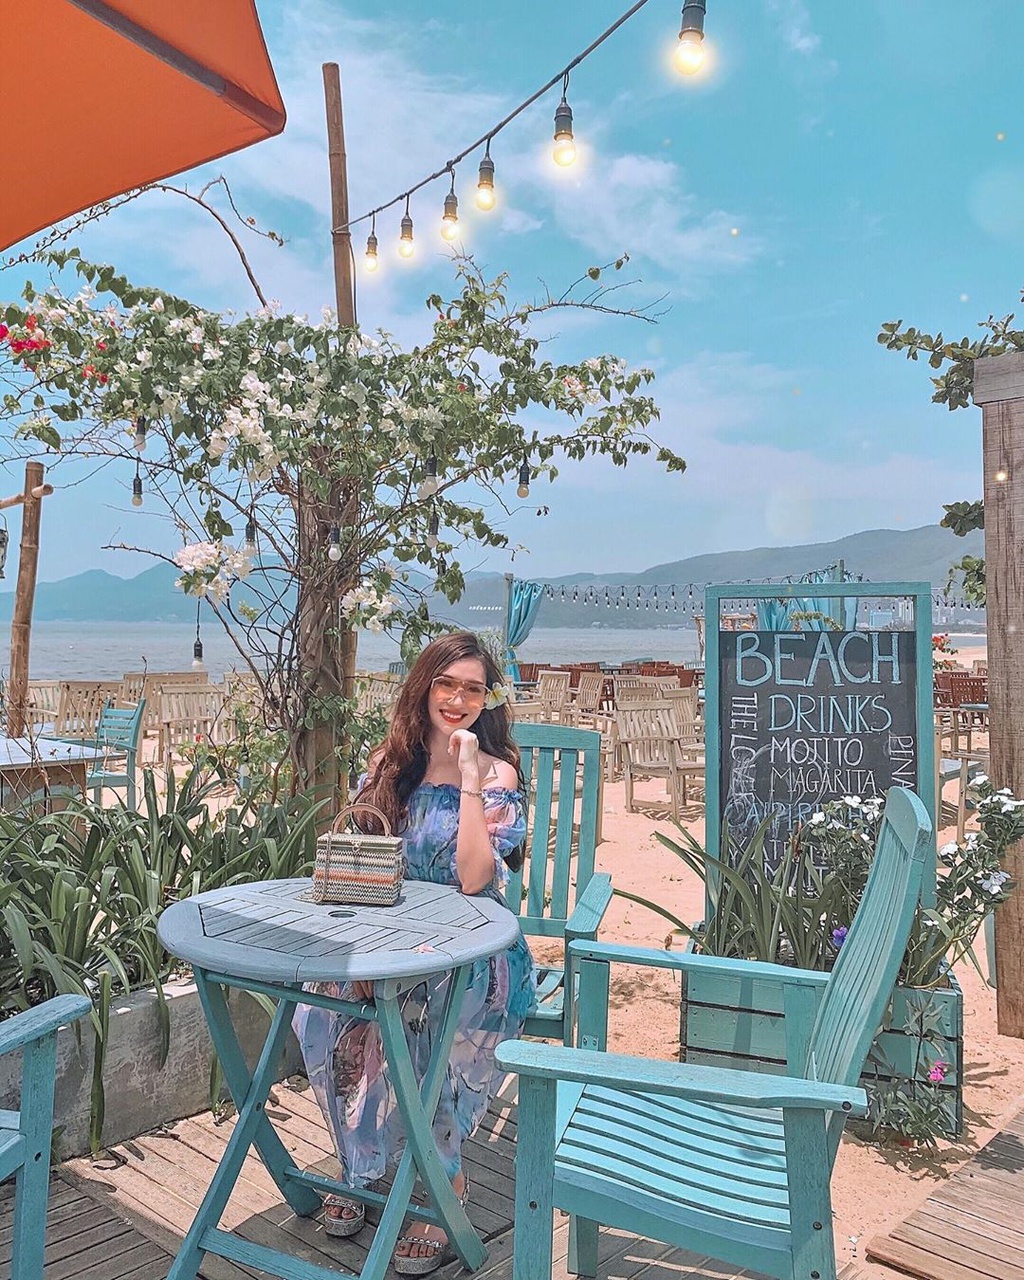 Sống ảo với 4 quán cà phê view biển ở Quy Nhơn